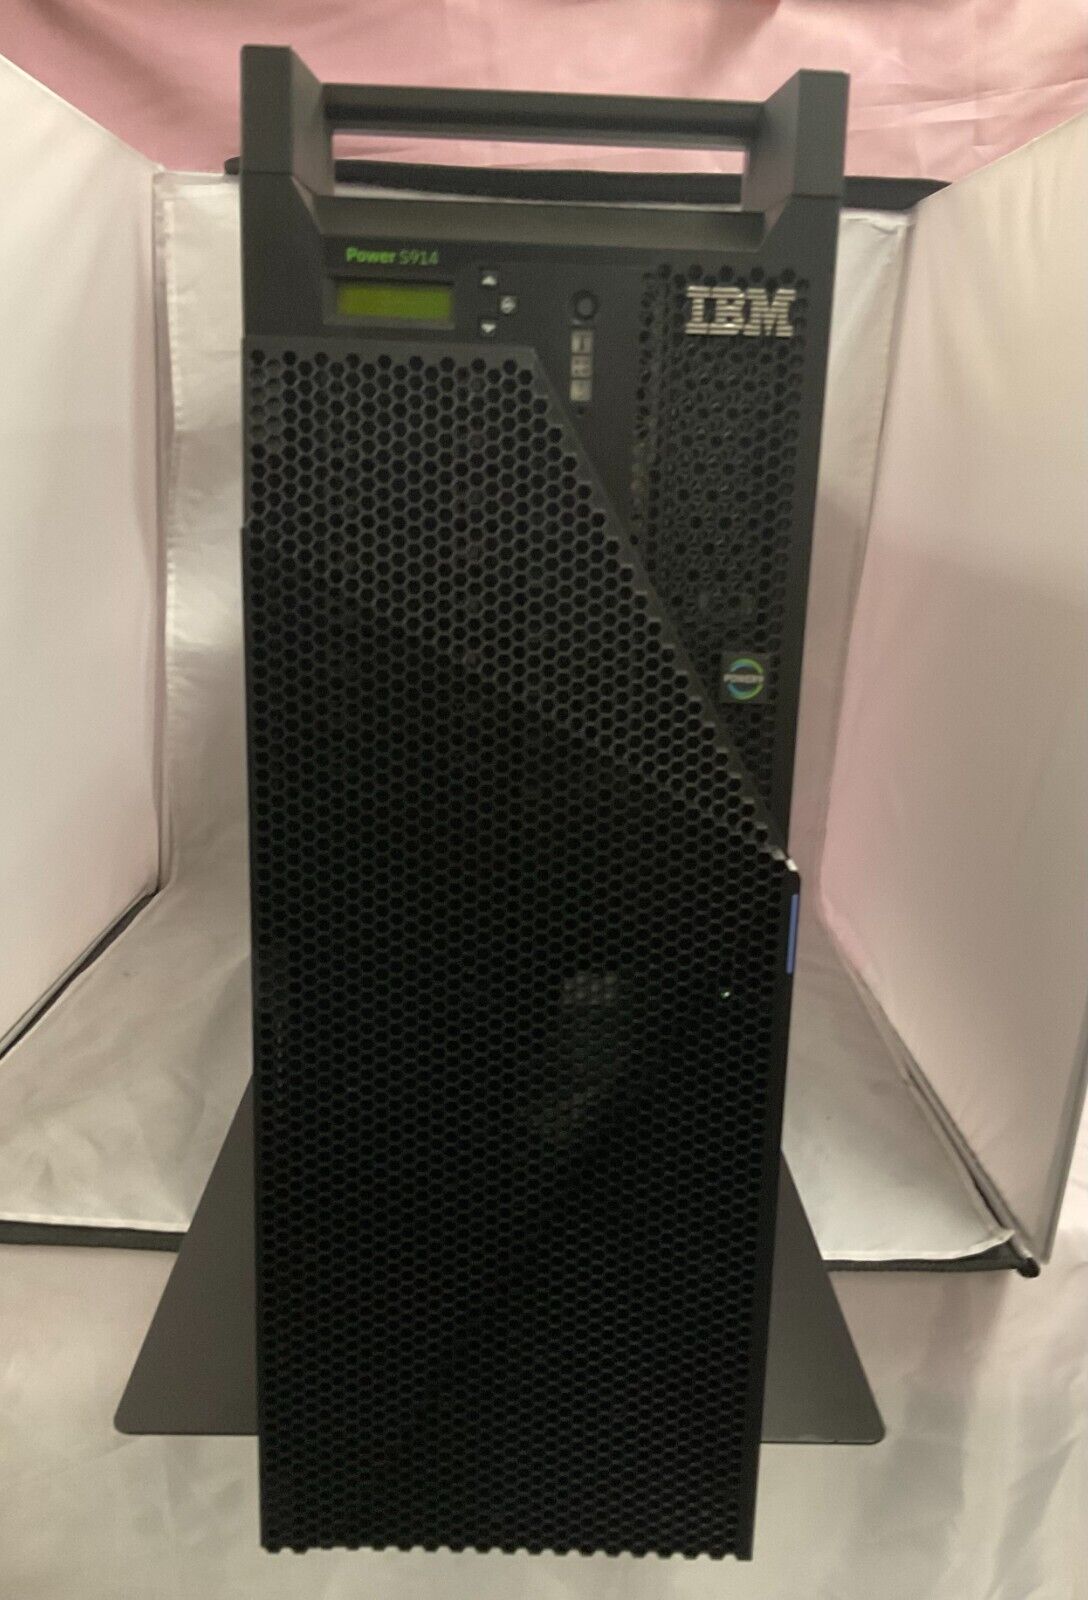 IBM 9009-41A Power S914 i series, 4-core 2.3/3.8Ghz, 1 OS 25 user i V7R5 license